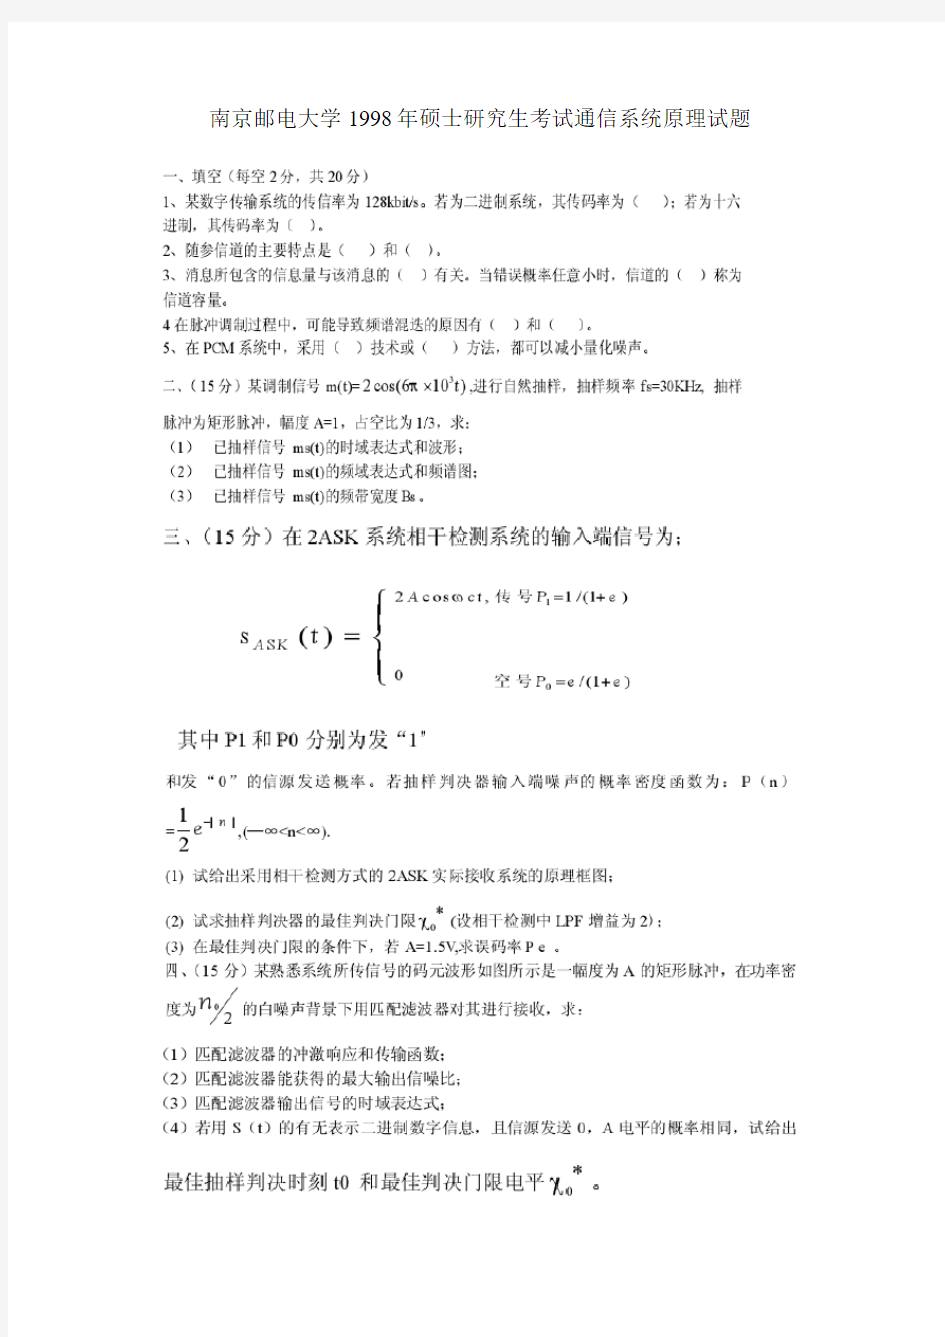 南京邮电大学1998年-2009年硕士研究生考试通信系统原理试题